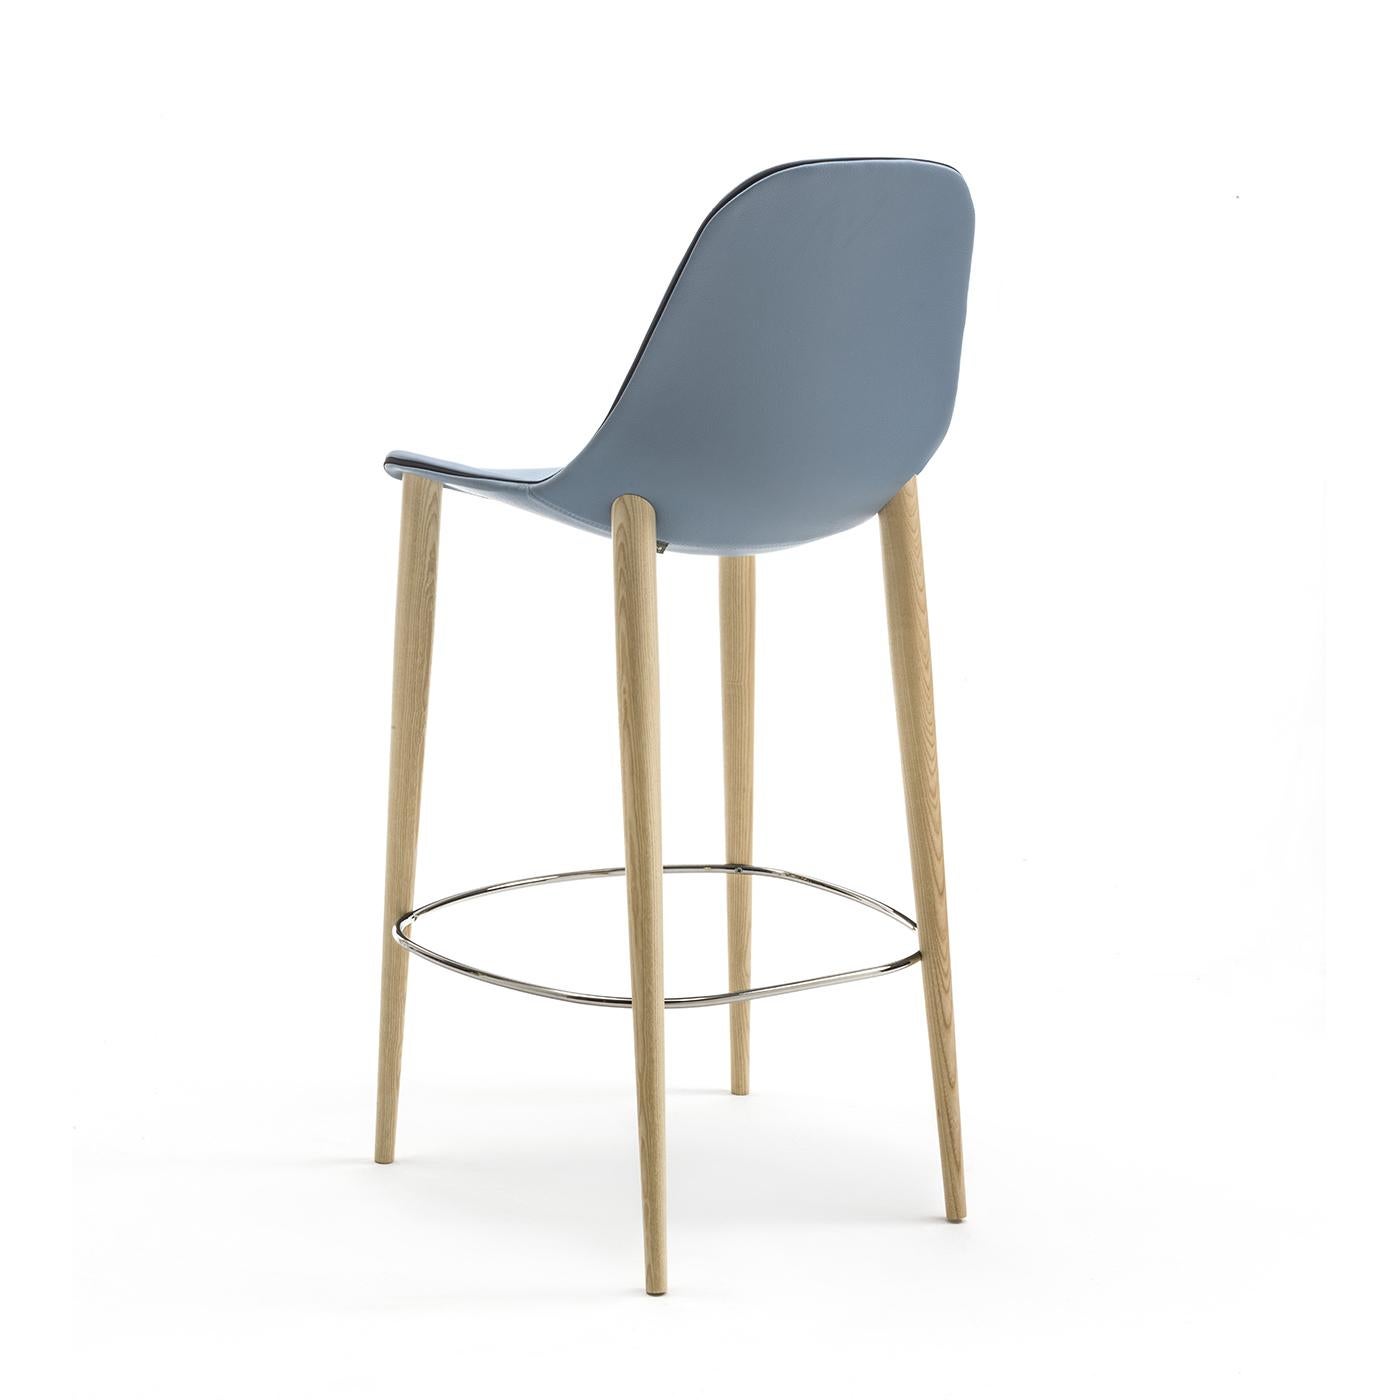 Le design minimaliste de cette chaise la rend parfaite pour tous les environnements. Sa structure est composée de quatre pieds fixes en bois de frêne naturel et d'un repose-pieds chromé brillant. Sa coque en aluminium est recouverte de cuir souple